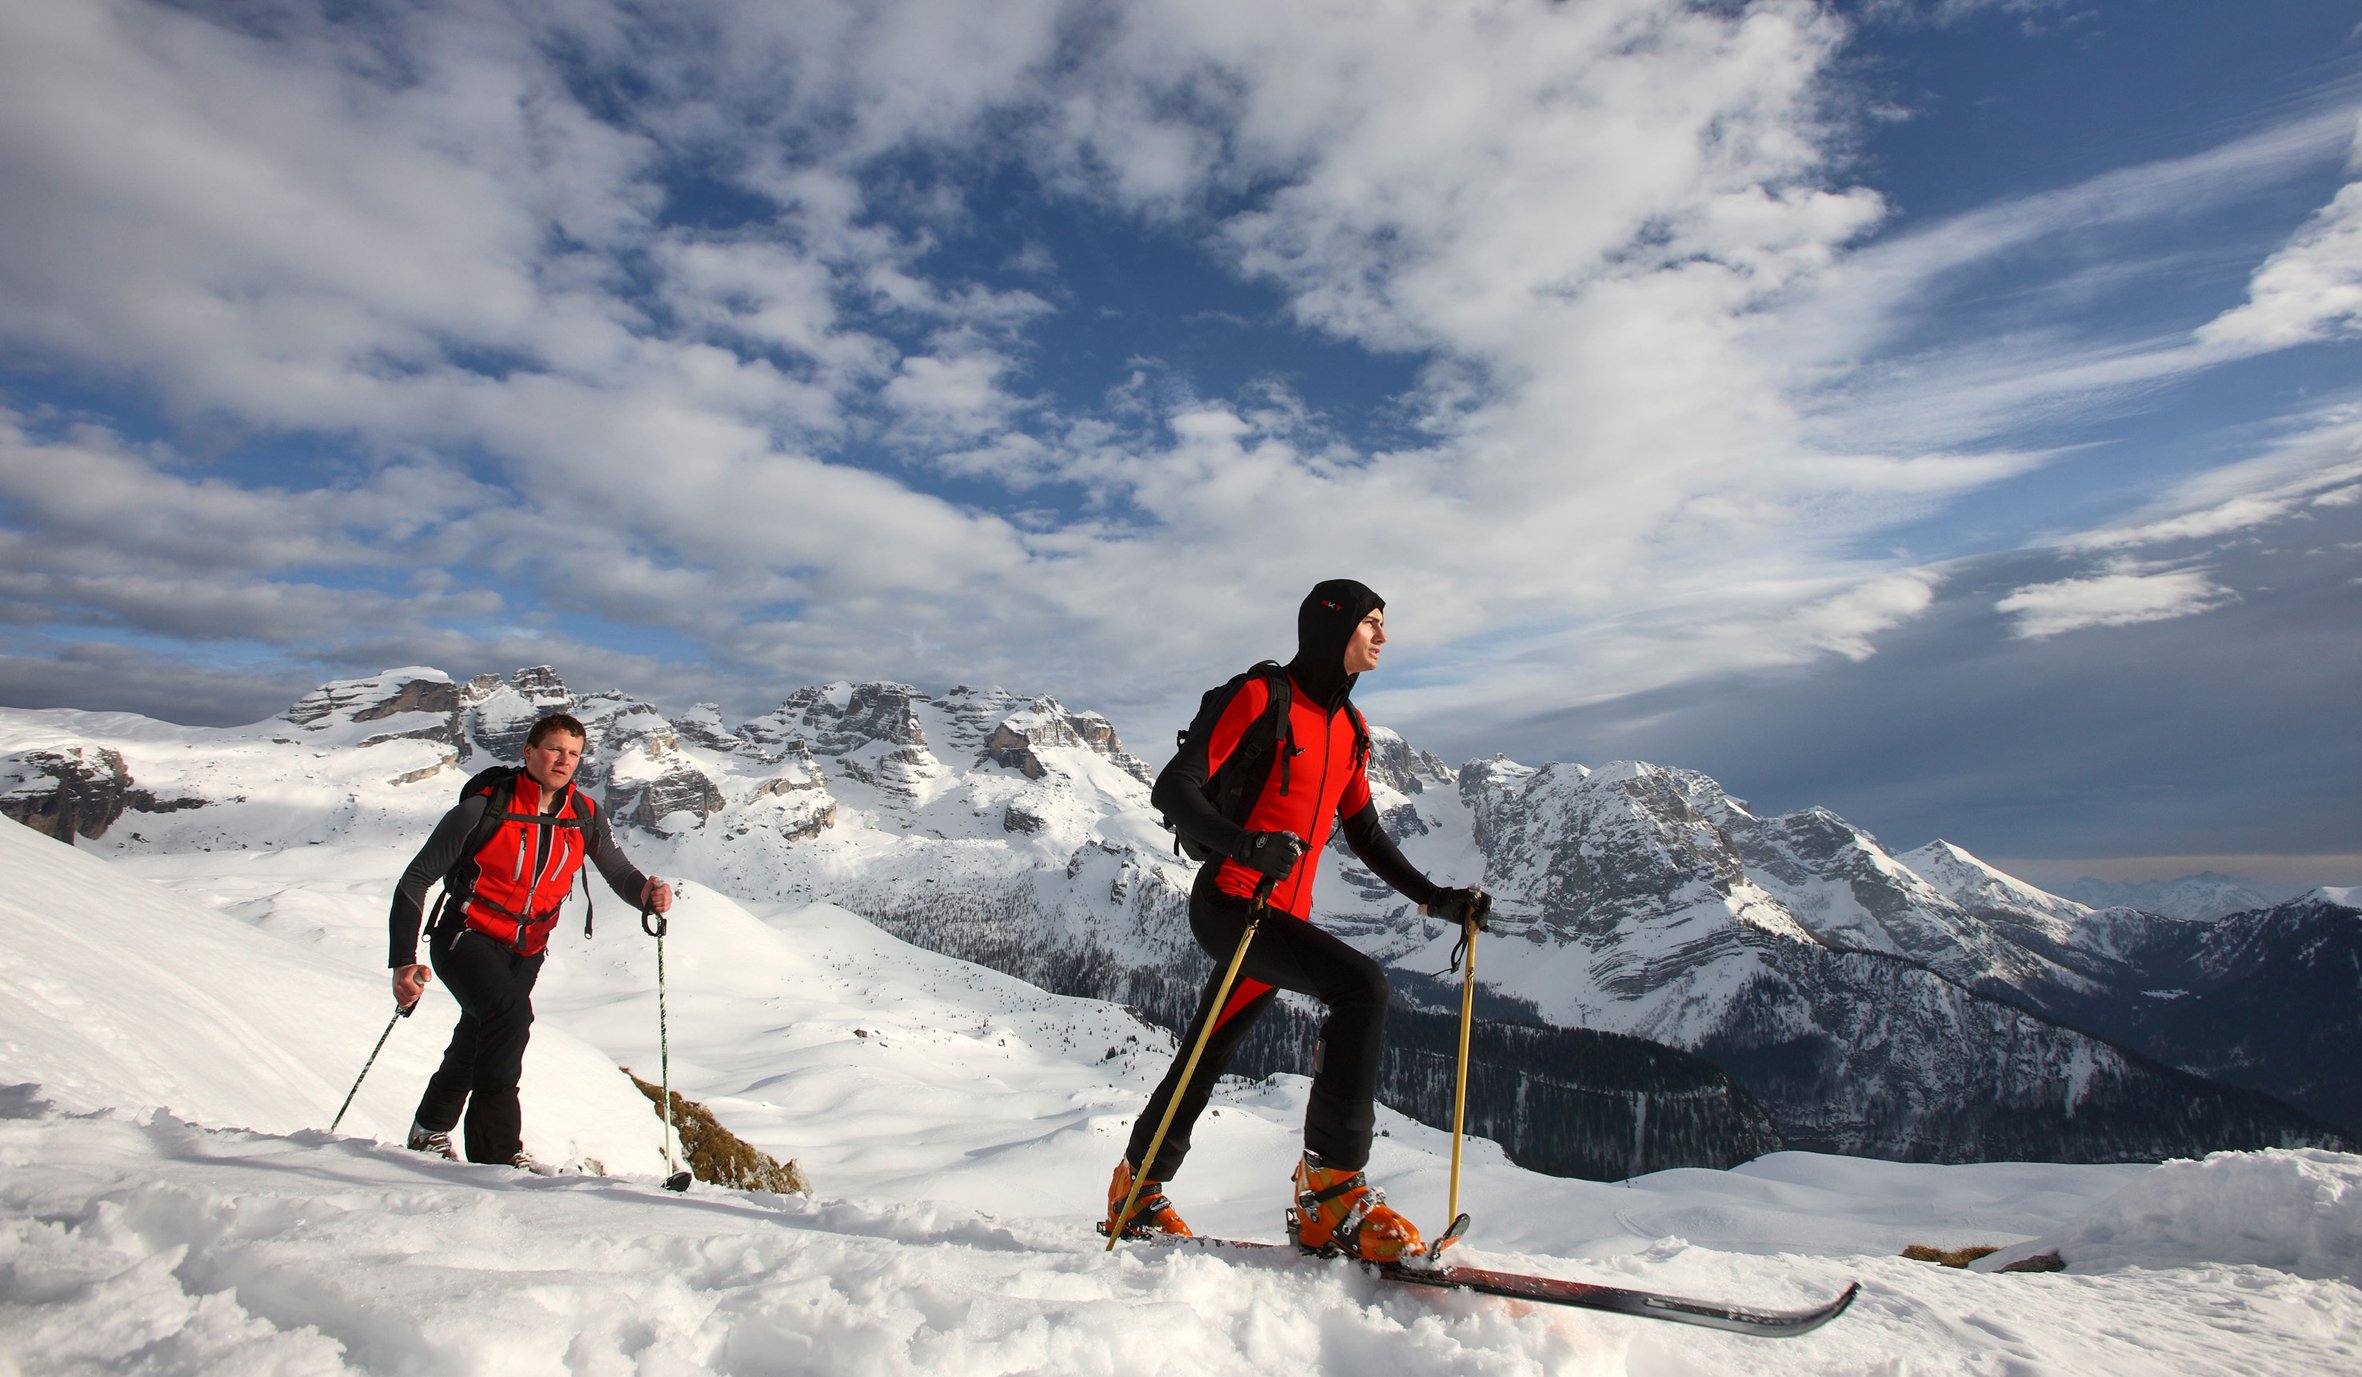 Ziele – Trentino / Skirama Dolomiti / Dolomiti Superski: Viel Neuschnee und perfekte Pisten in den Skigebieten von Norditalien